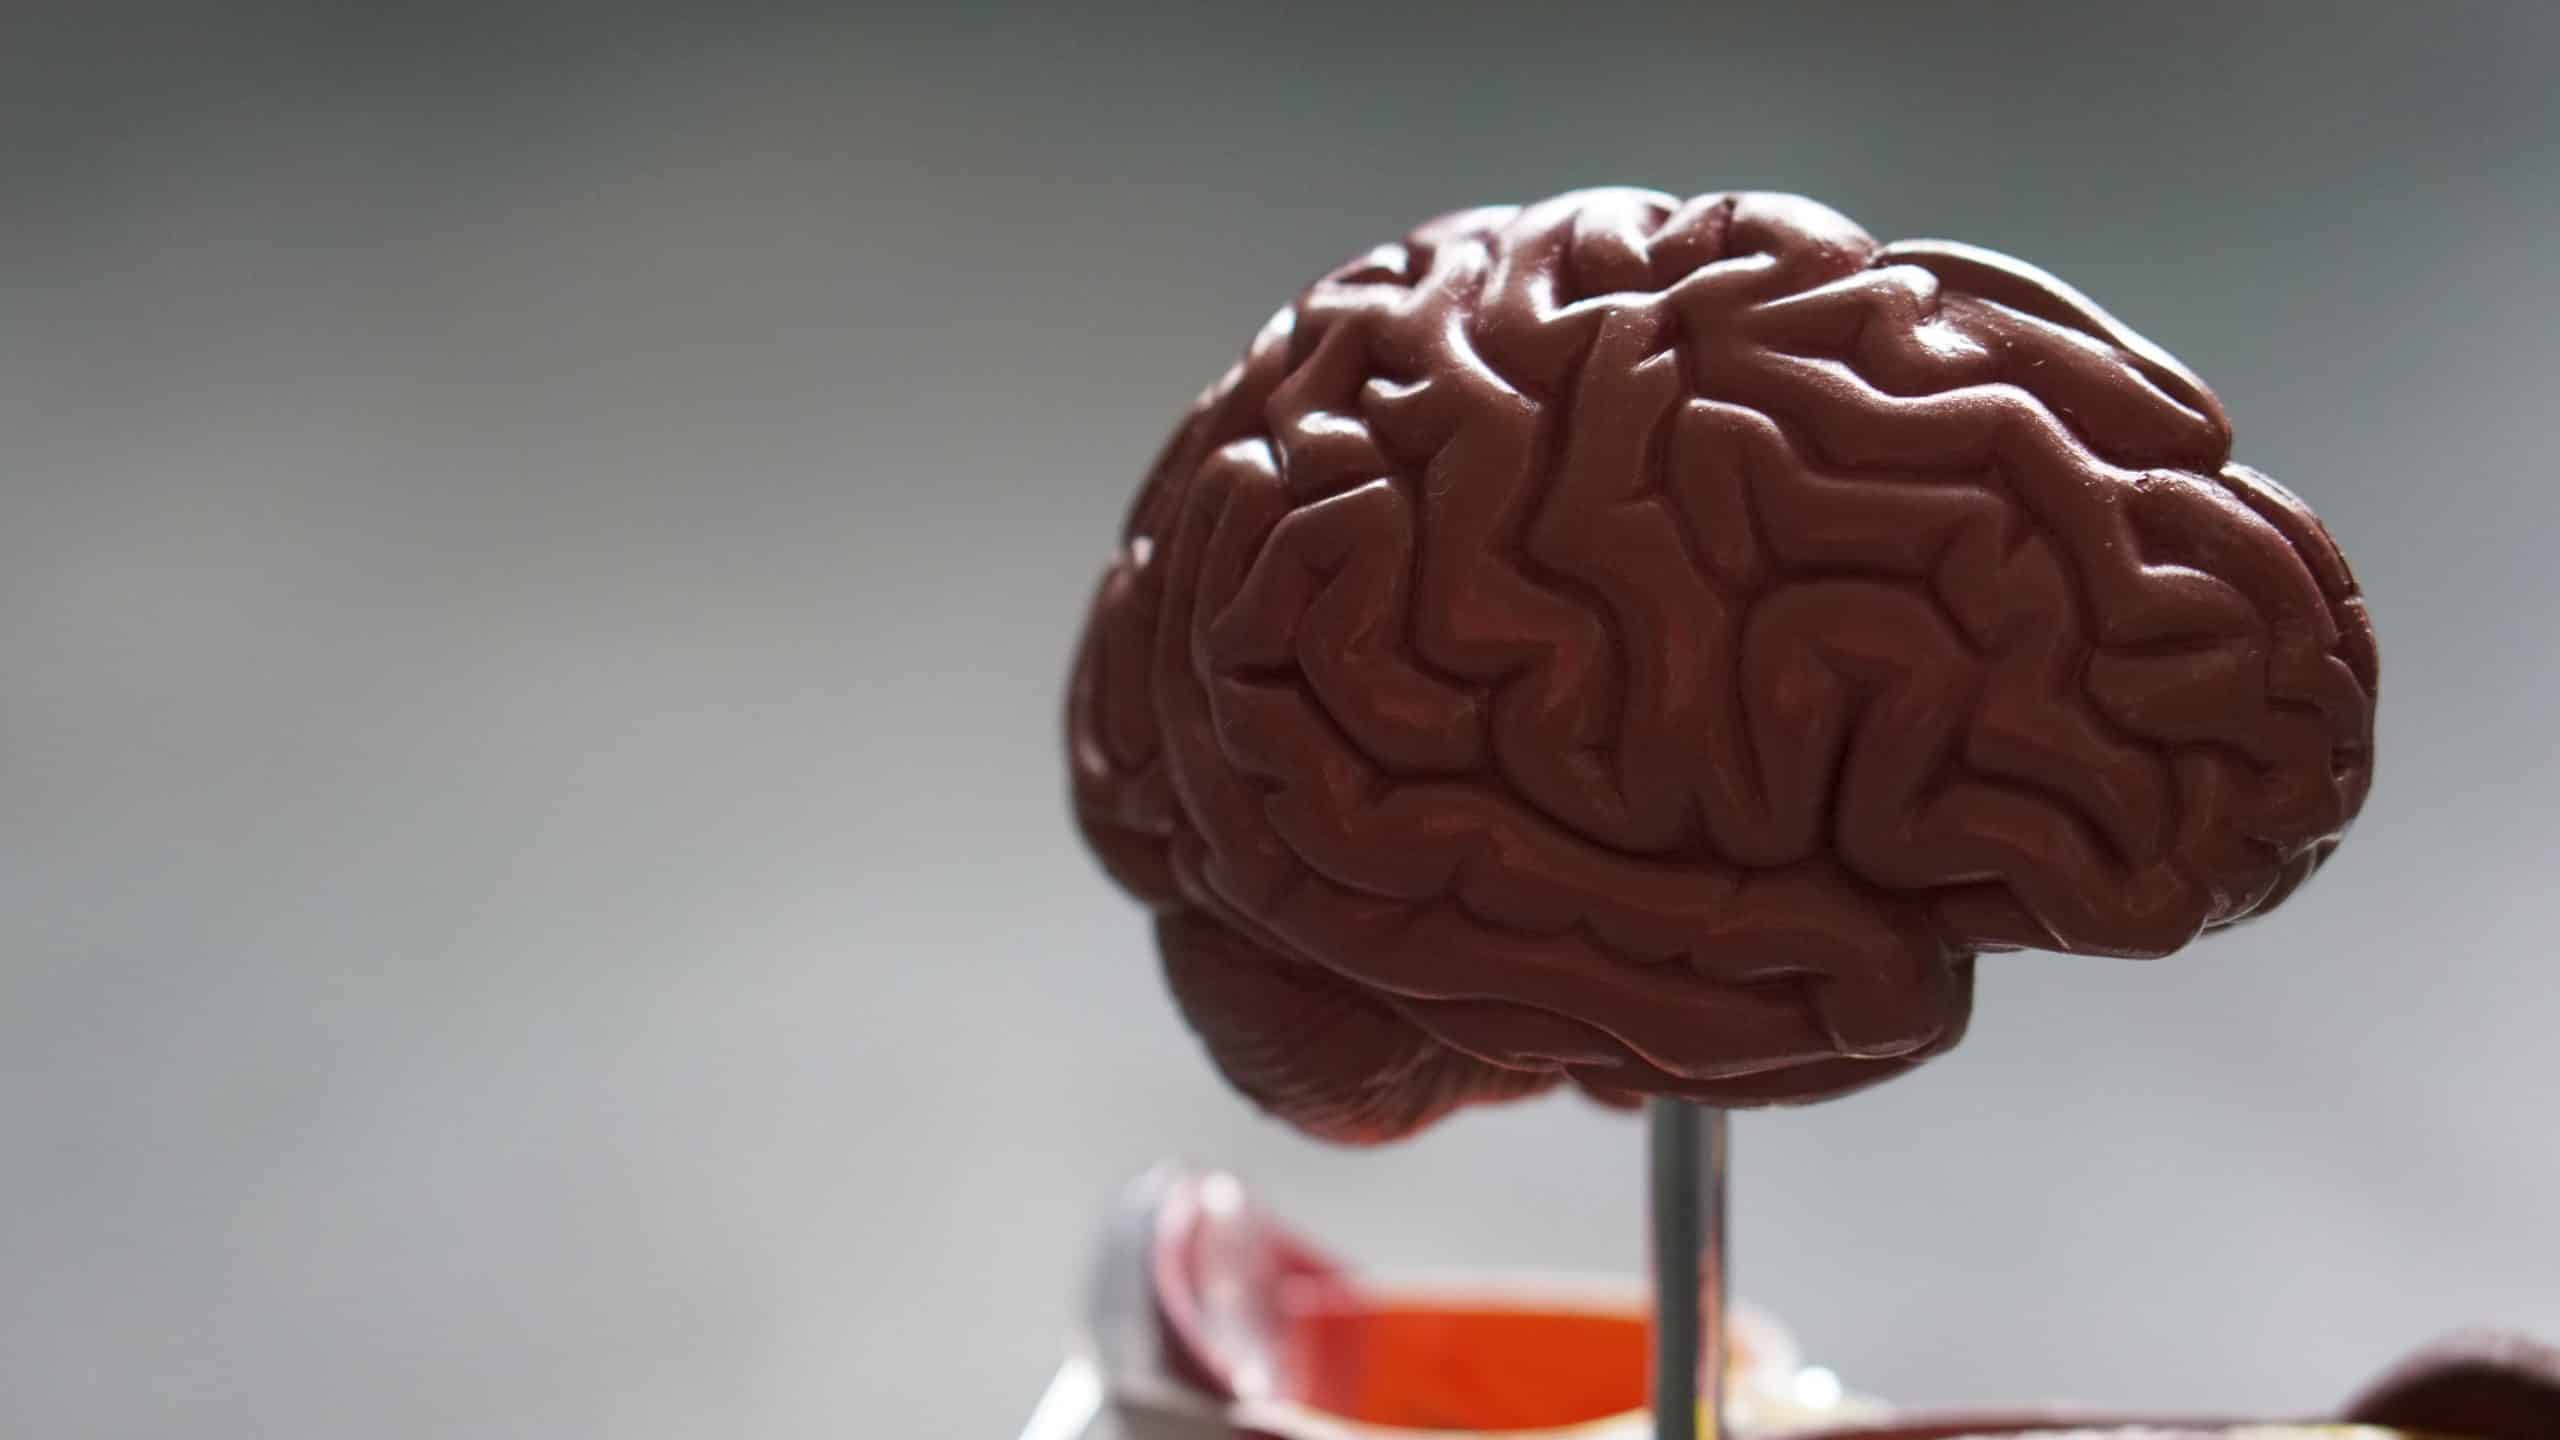 Tamanho do cérebro humano: como isso influencia a inteligência?